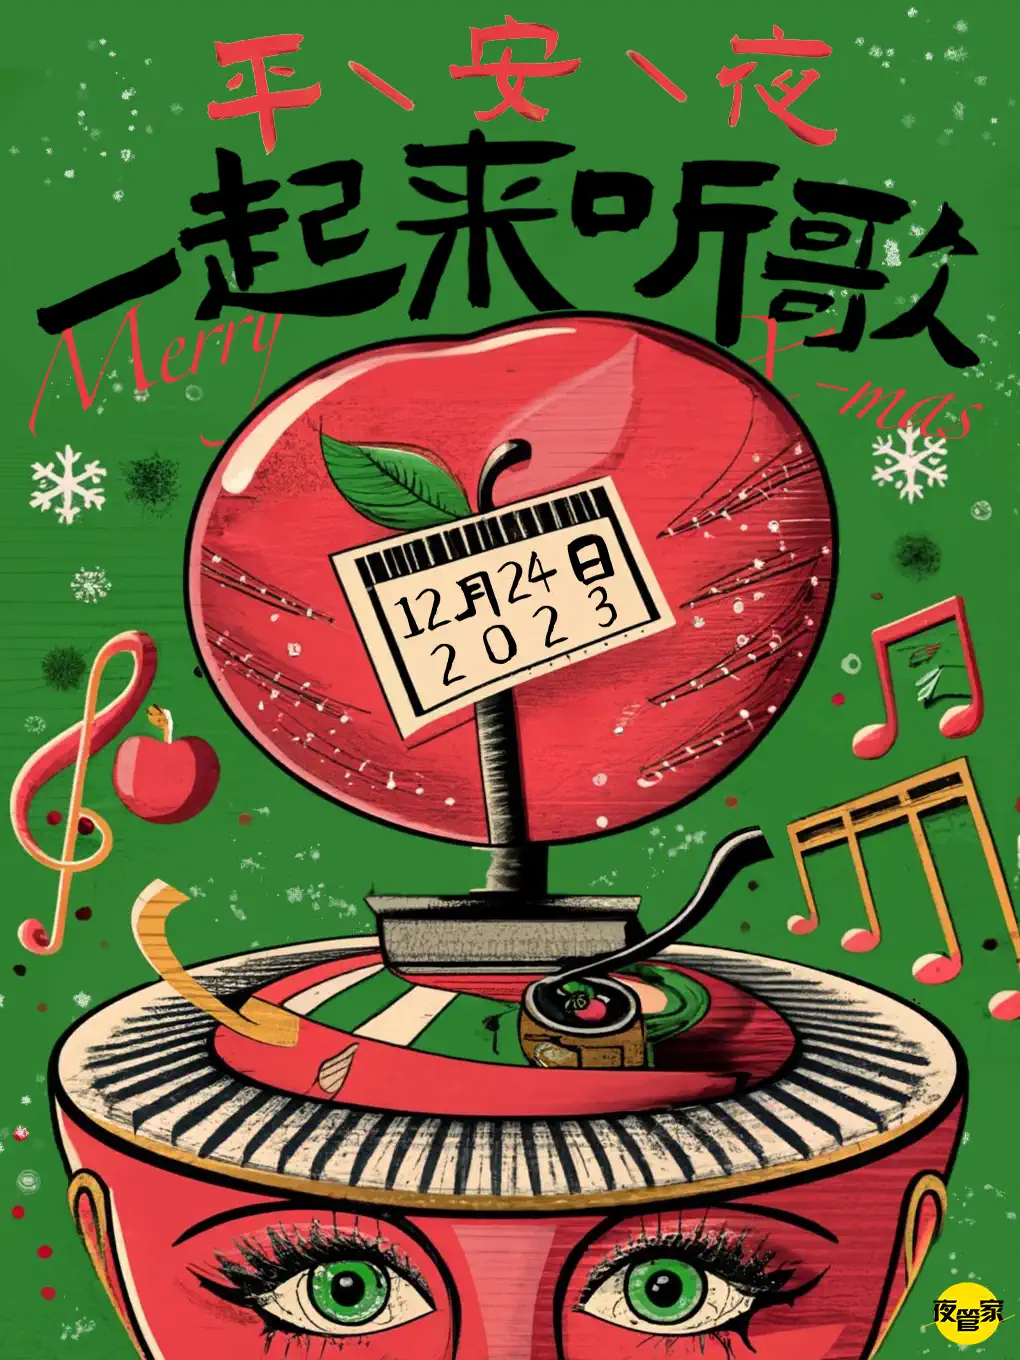 北京平安夜一起来听歌——与crush一起燃燥圣诞！钟声响起音乐狂欢！